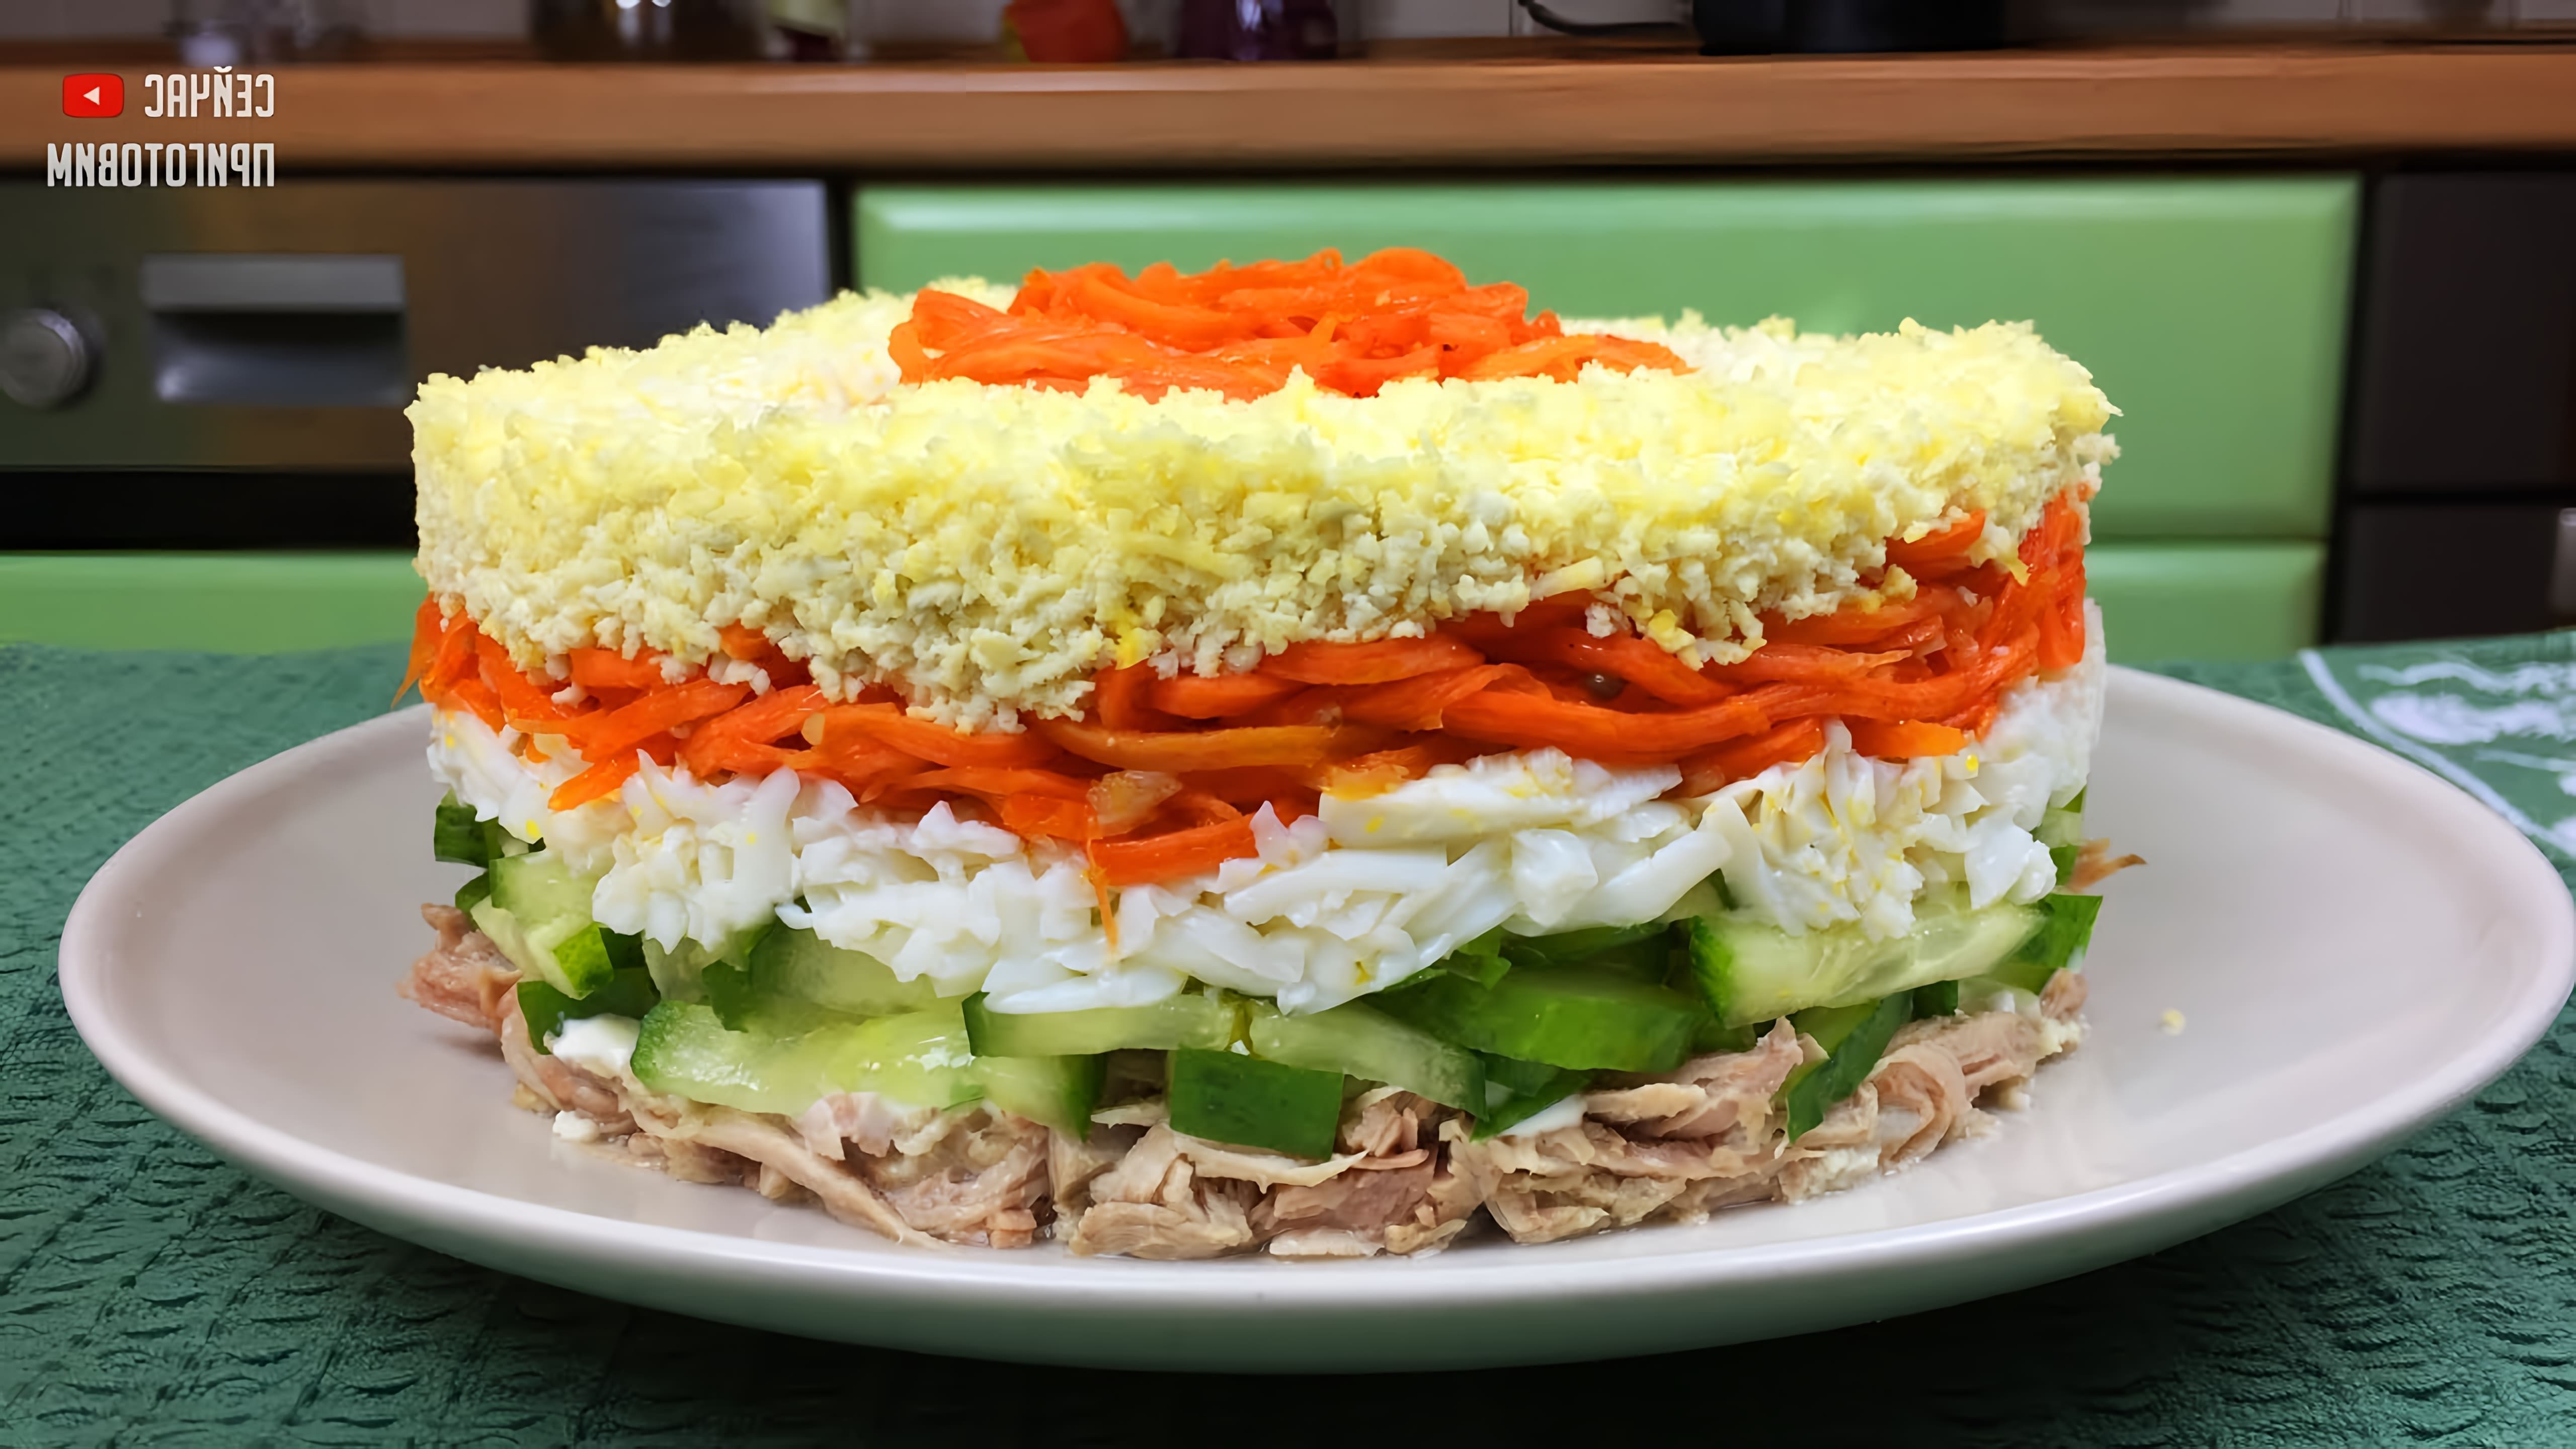 В этом видео демонстрируется рецепт слоеного салата с корейской морковкой, курицей и свежим огурцом